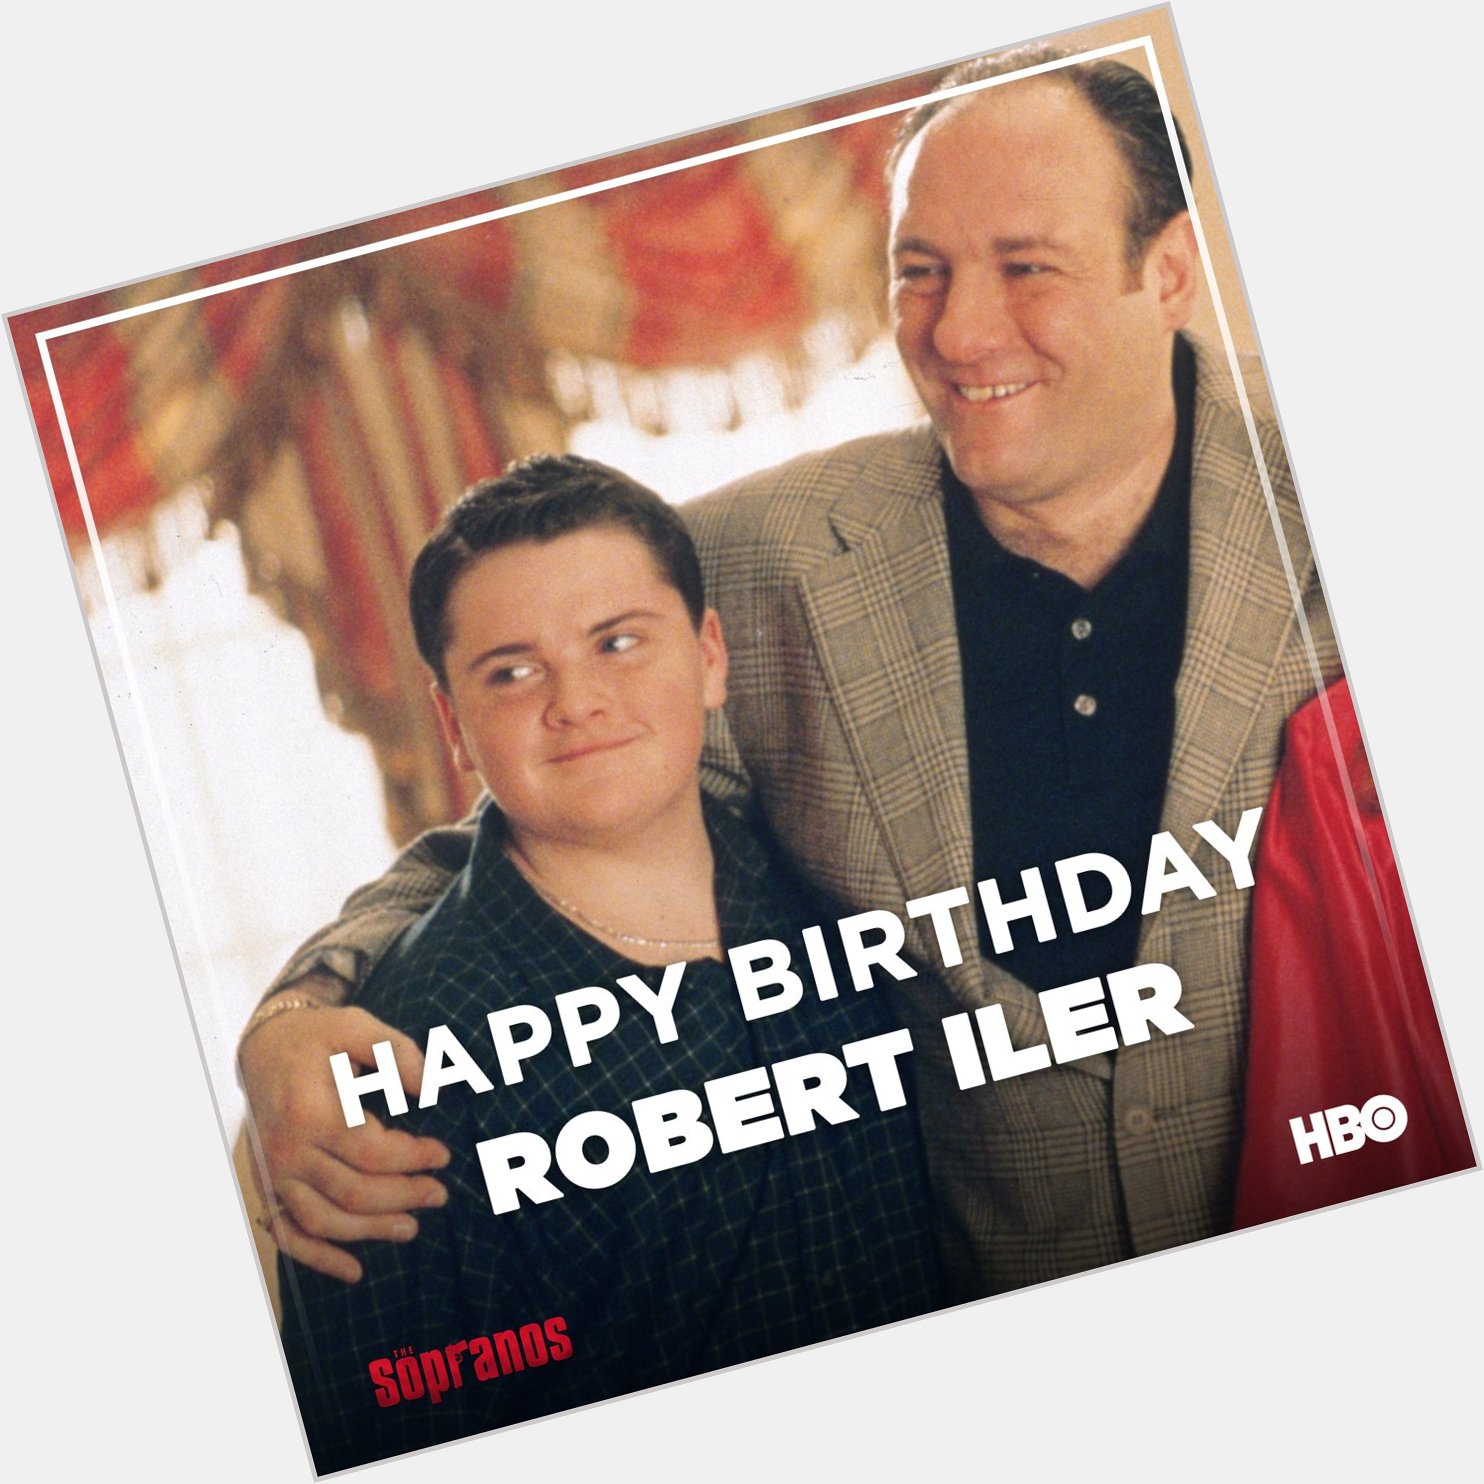 Wishing Robert Iler, aka Anthony Junior, a very happy birthday. 